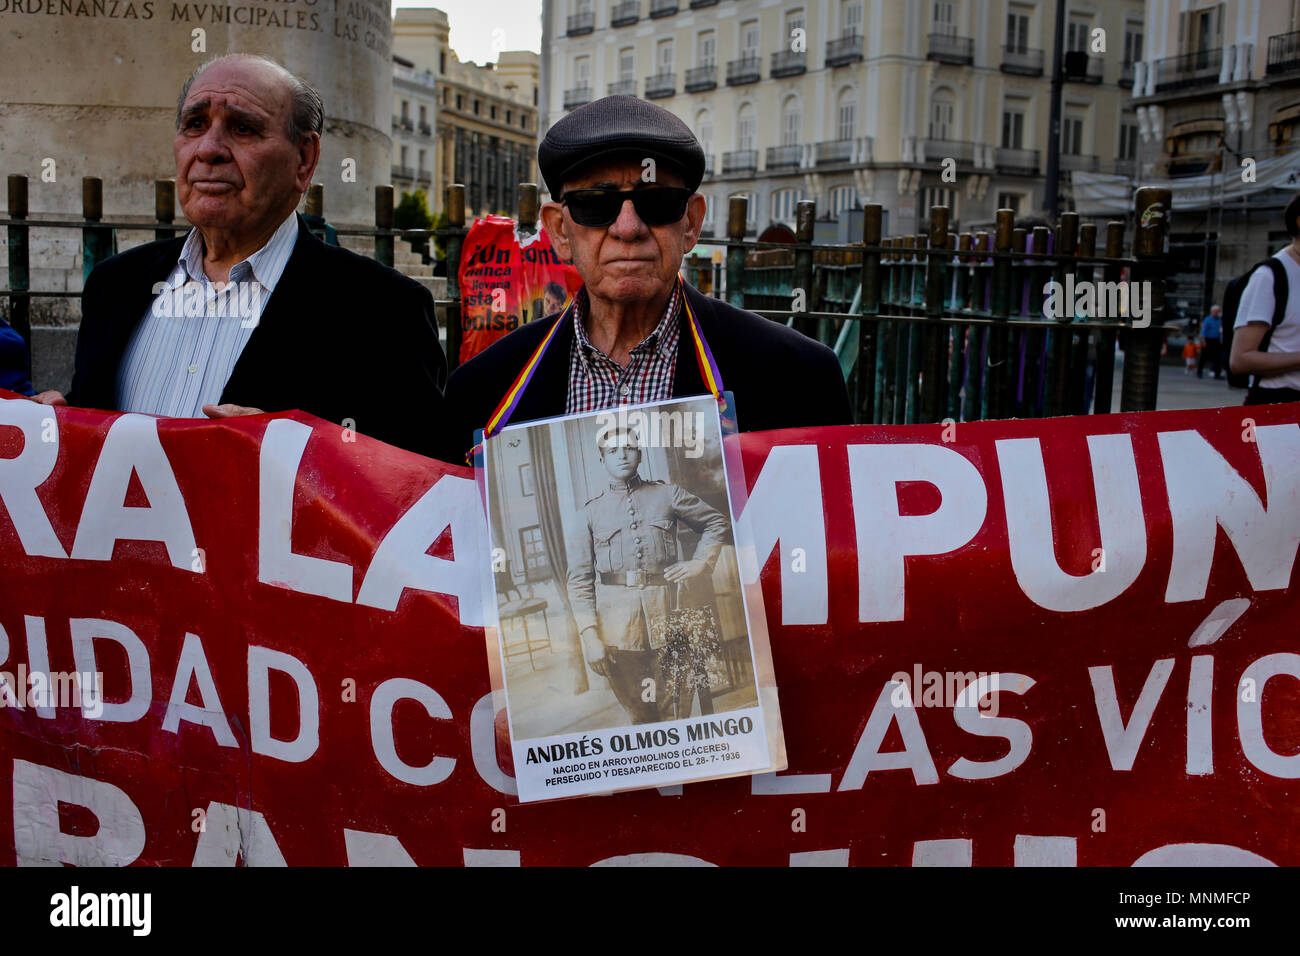 Vu un manifestant avec une photo d'une personne qui avait disparu par le régime de Franco, avec une bannière énorme soutien aux victimes et a disparu. Les manifestants se sont rassemblés dans le centre de Madrid dans un rallye du souvenir pour ceux qui ont perdu la vie sous la dictature de Franco. Banque D'Images